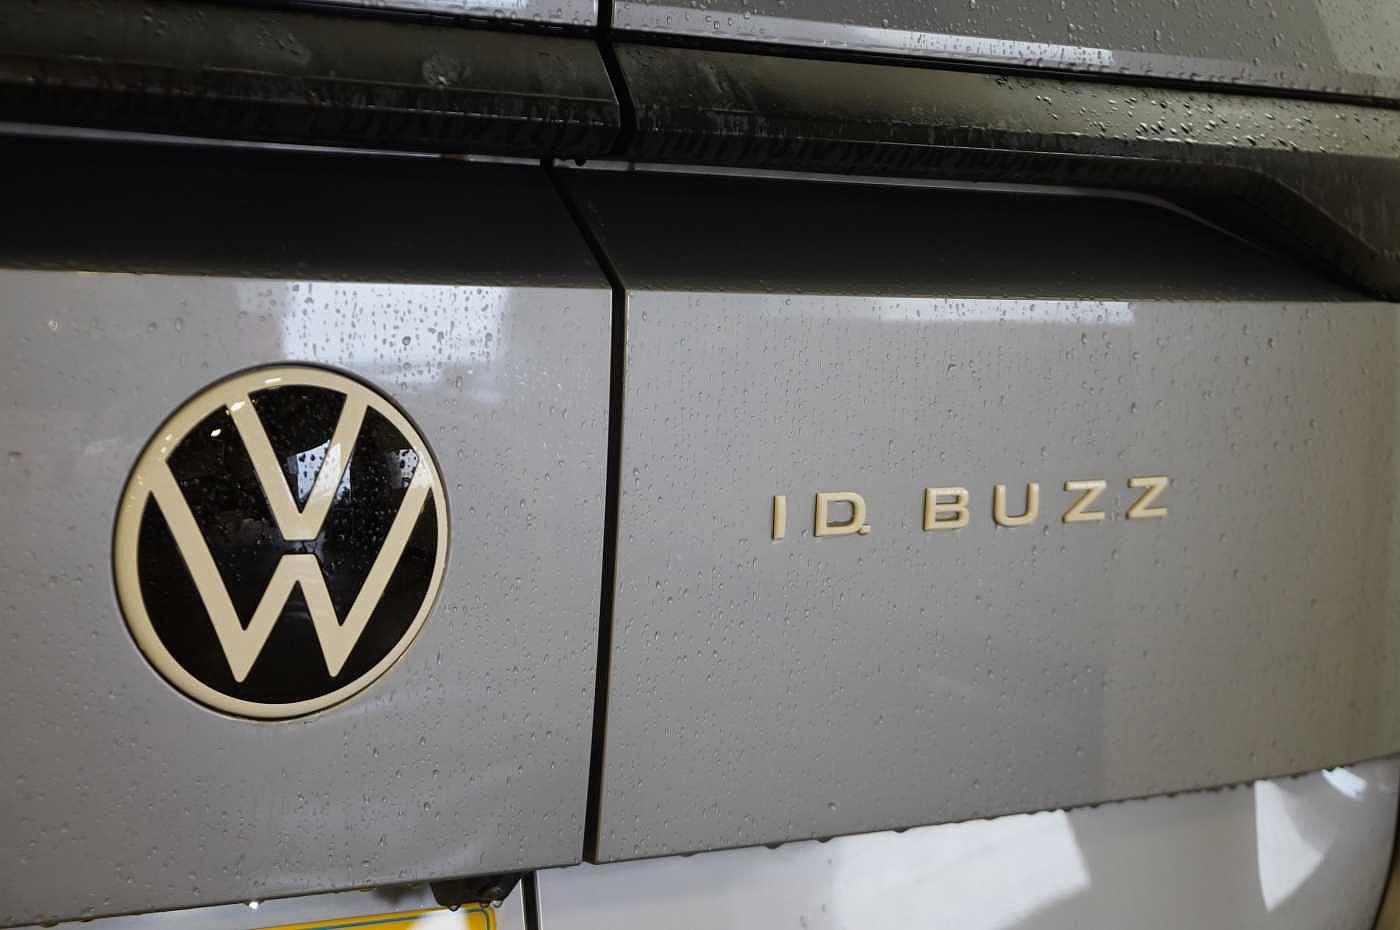 Volkswagen ID. Buzz Cargo for sale from Western Volkswagen Van Centre